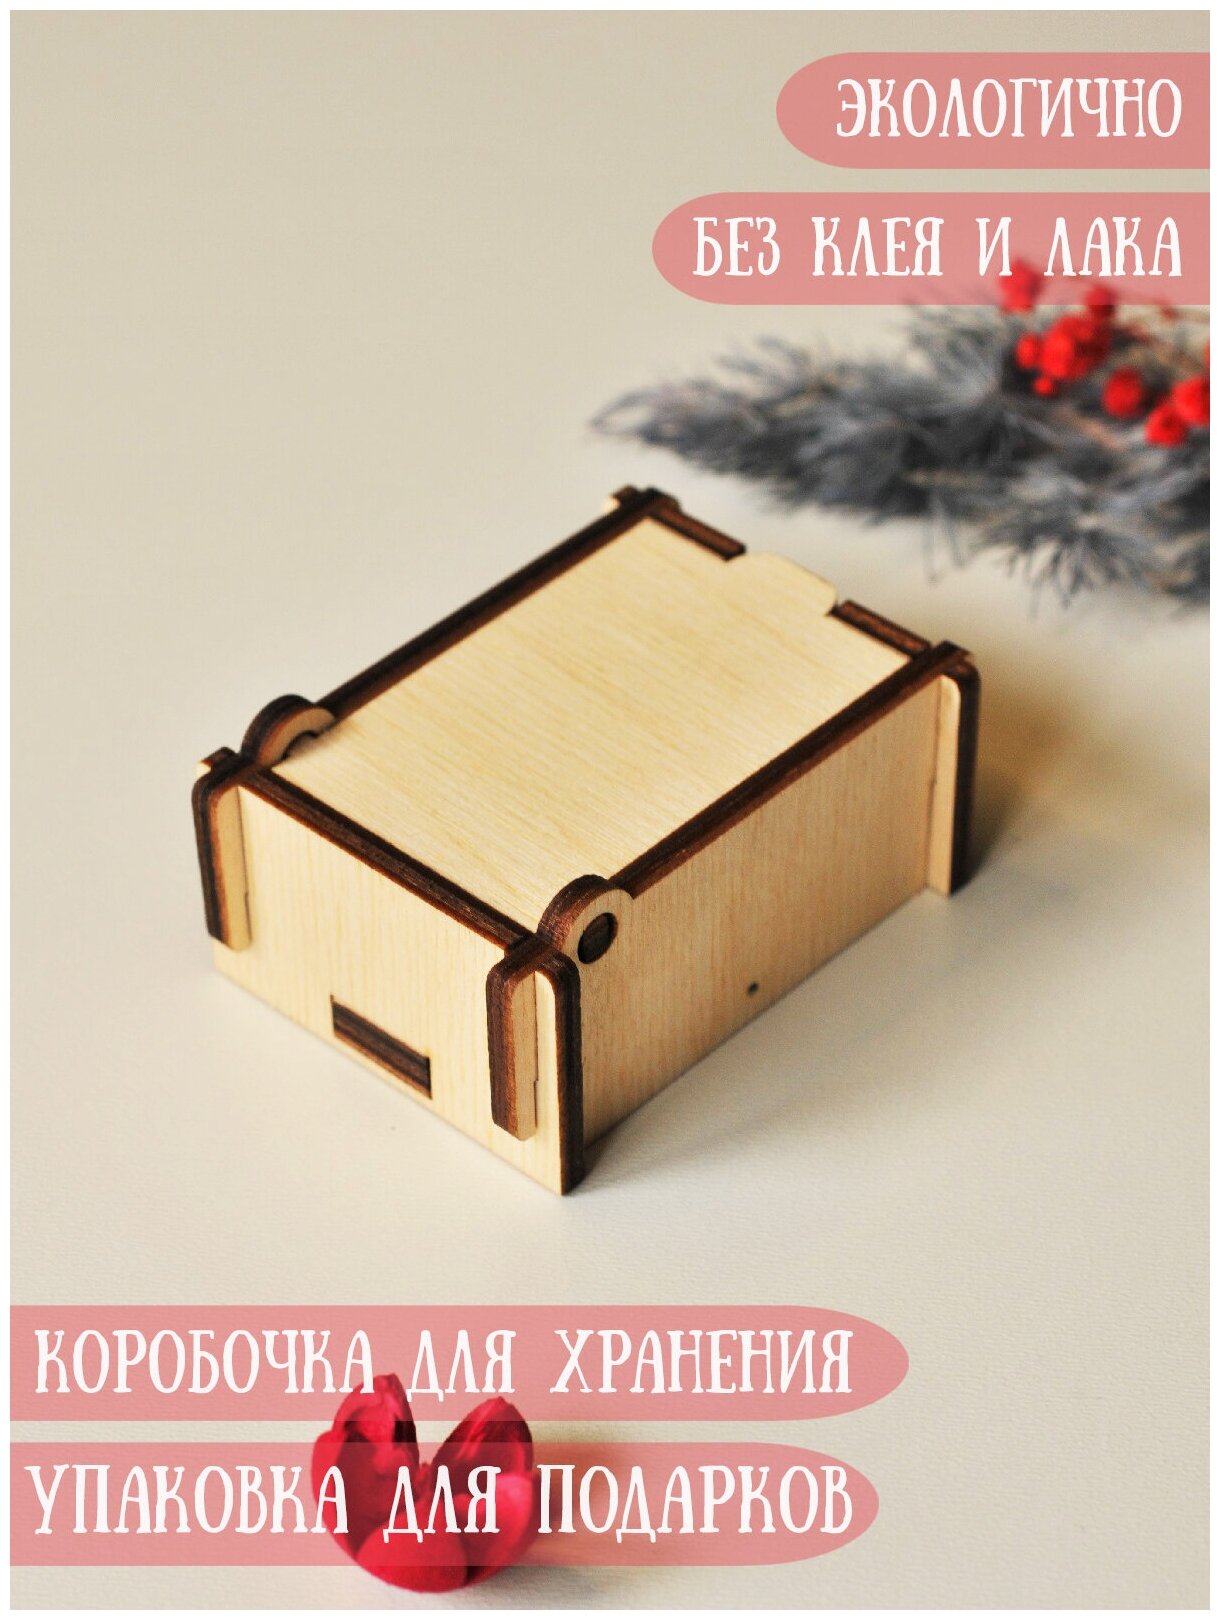 Коробка деревянная подарочная/для хранения RiForm, 55х70мм, фанера 4мм